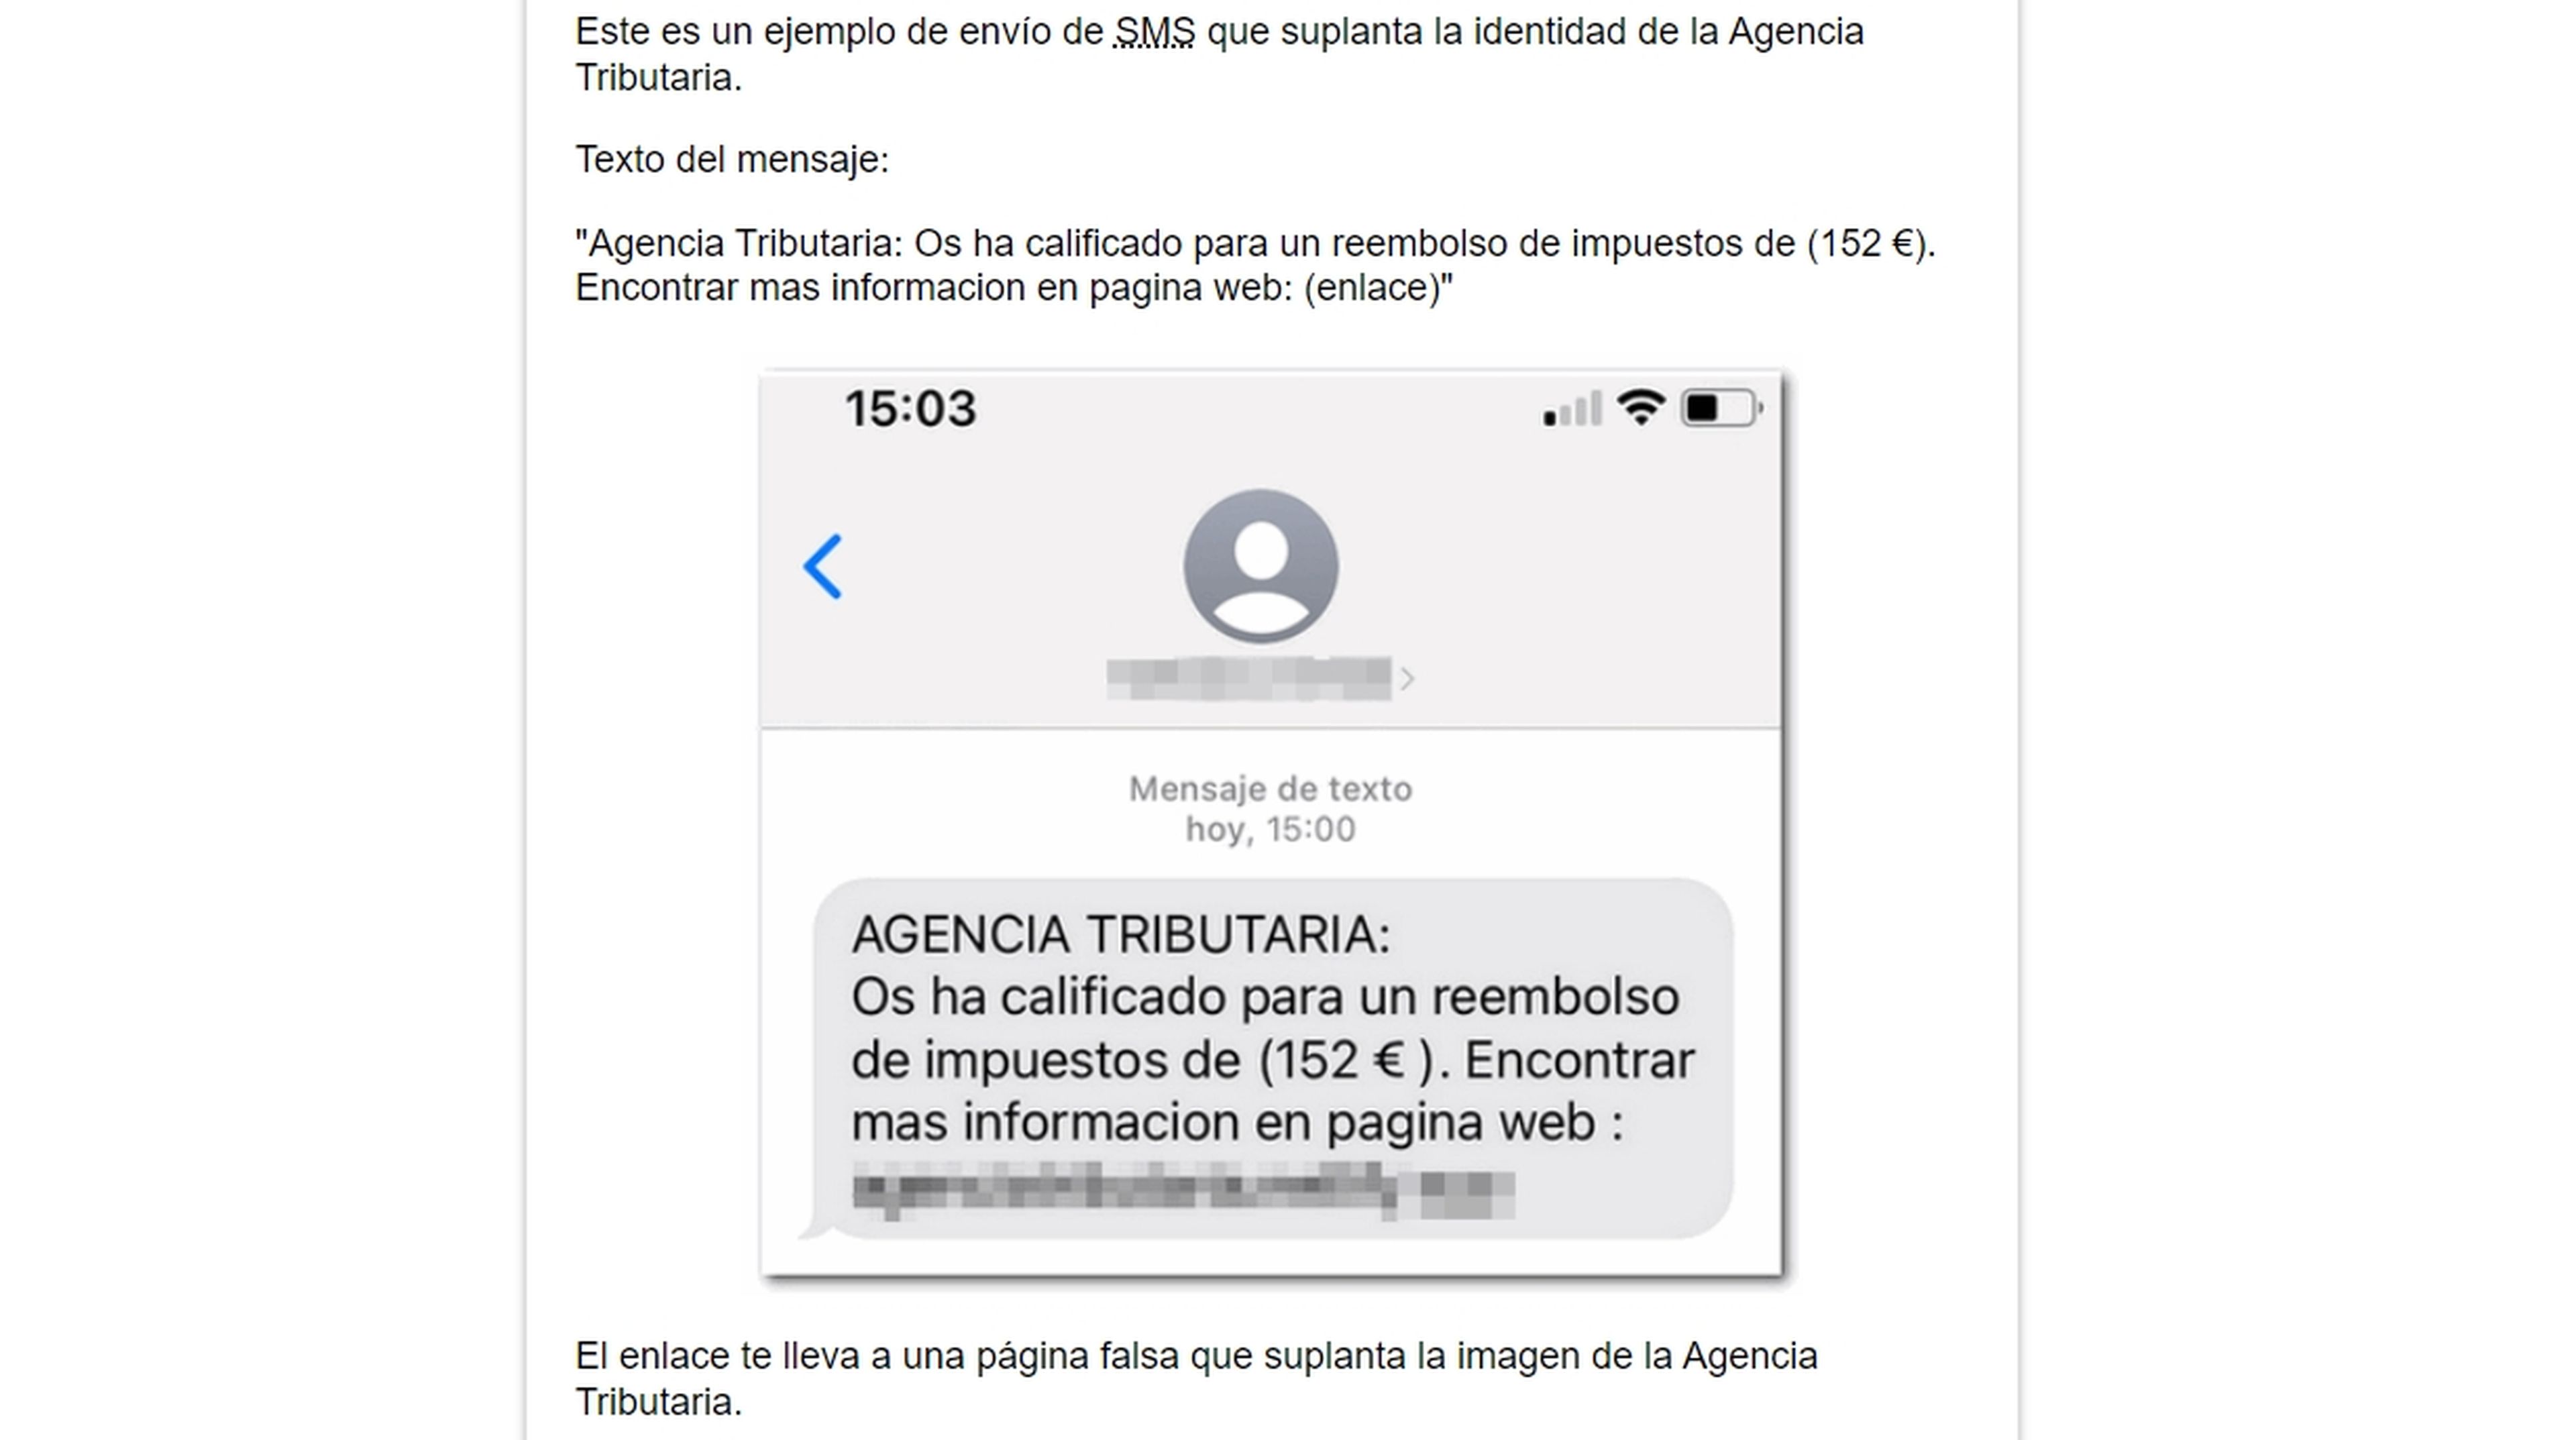 Ejemplo de suplantación de identidad vía SMS. Fuente: Agencia Tributaria.